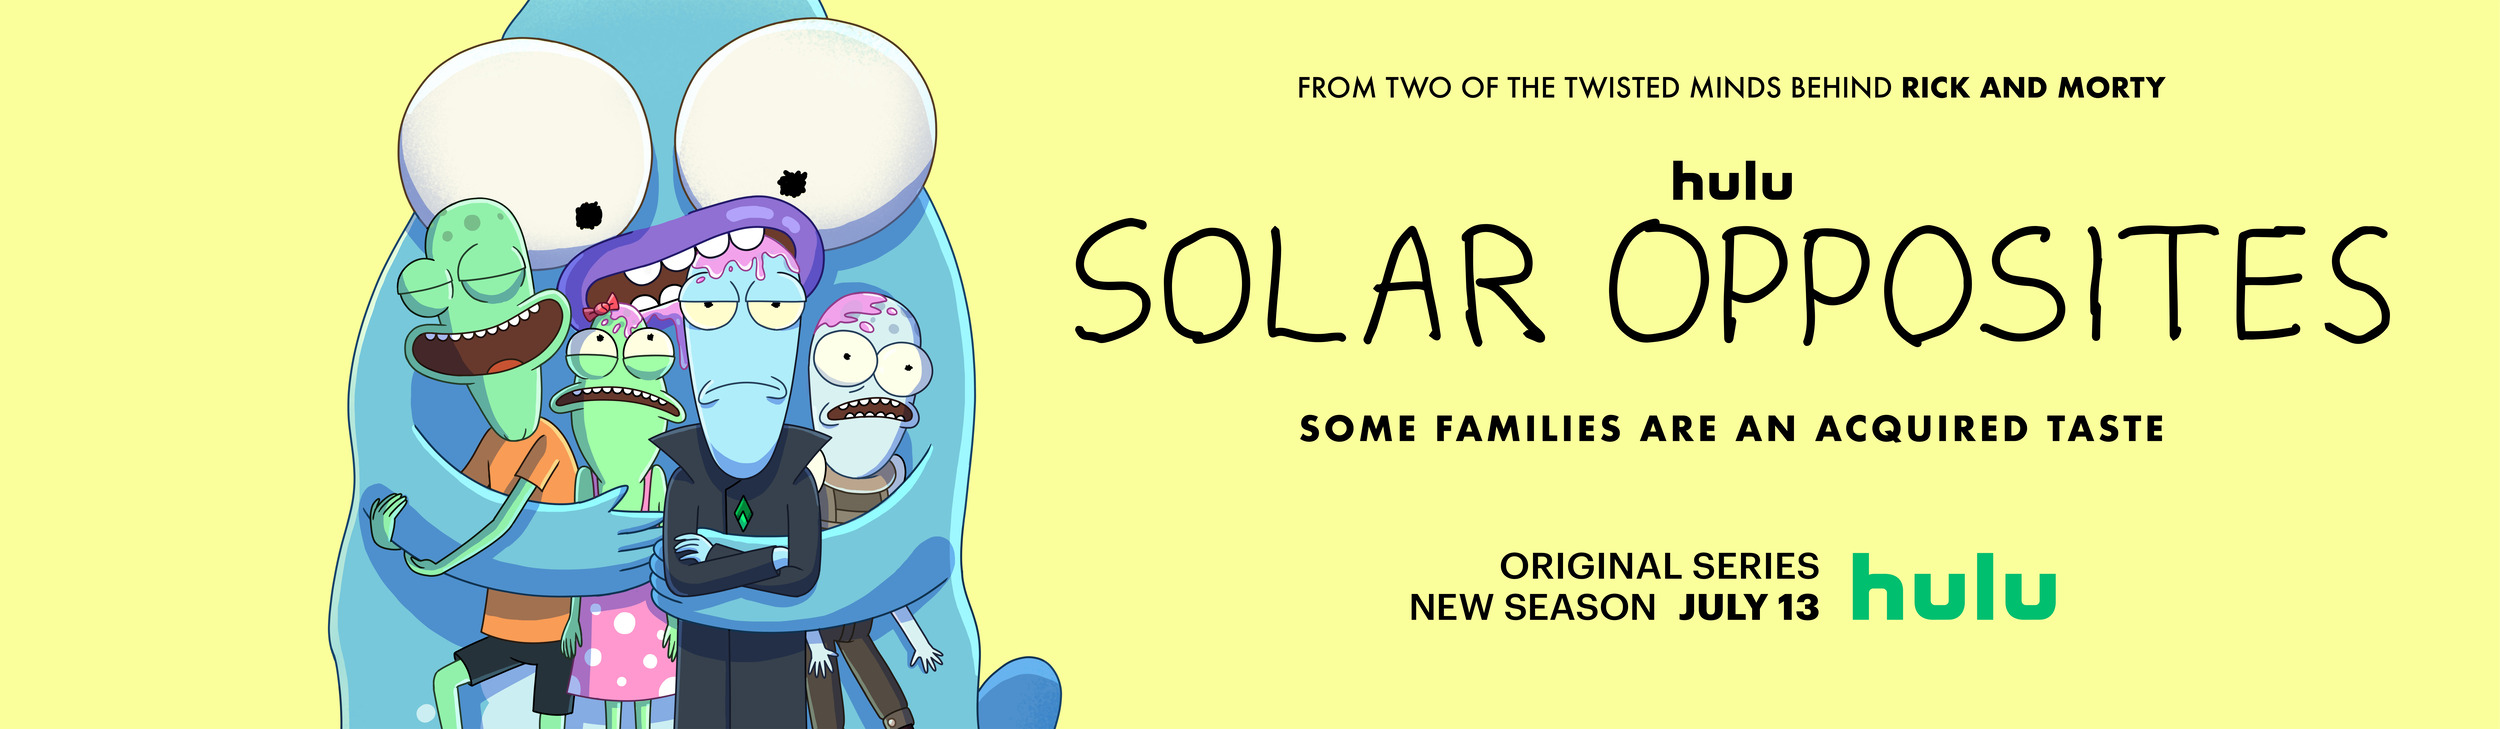 Mega Sized TV Poster Image for Solar Opposites (#5 of 7)